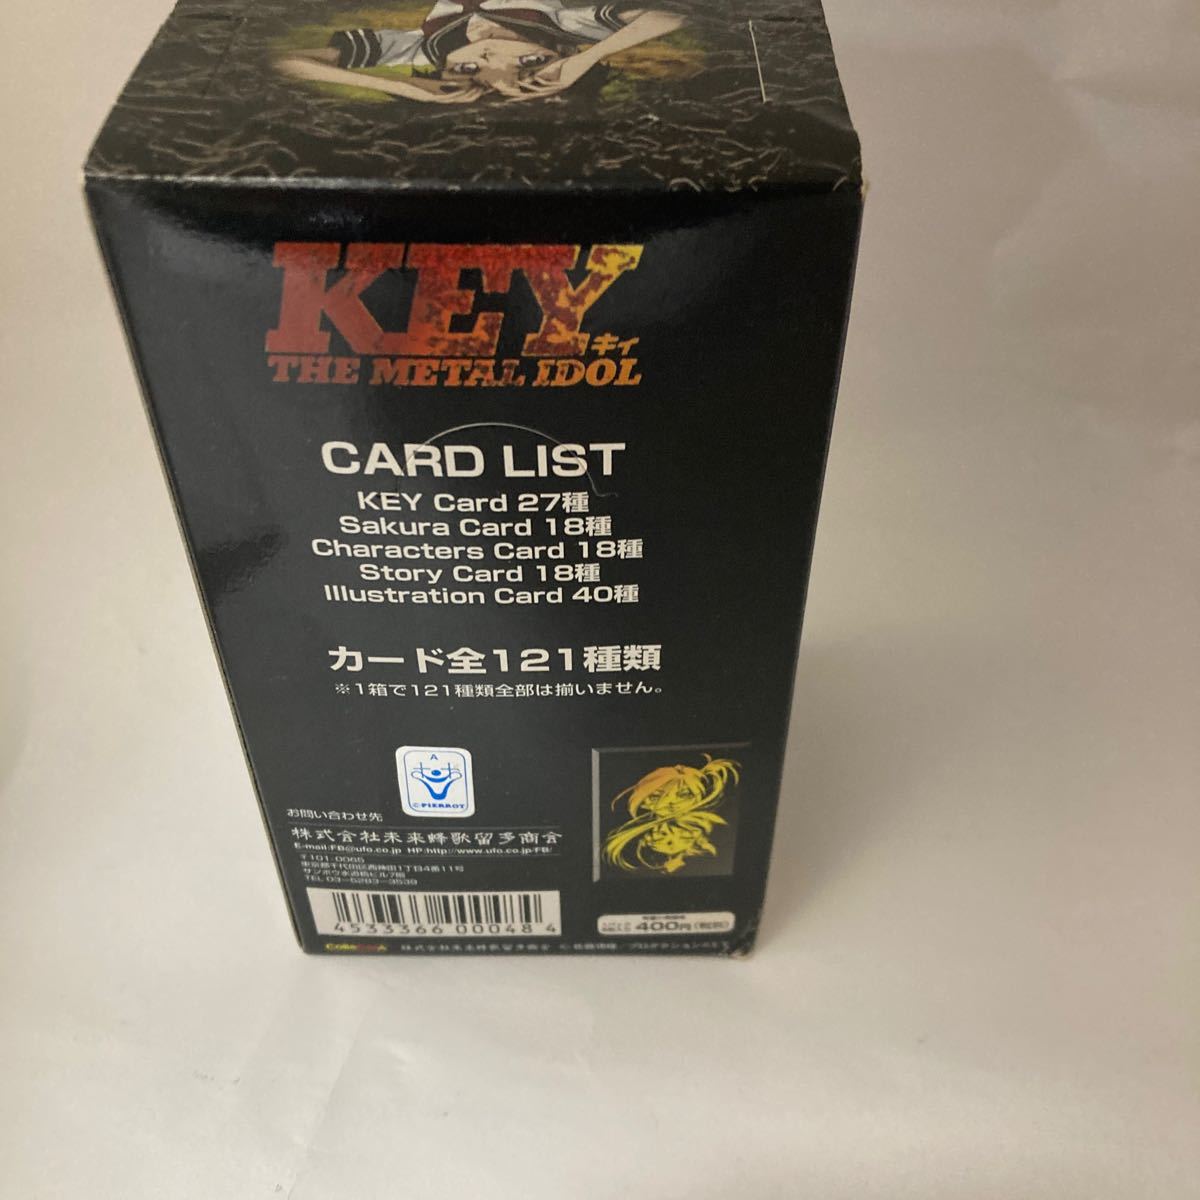  наличие 1 нераспечатанный Key The Metal Idol Trading Cards 15 Pack Box ColleCarA